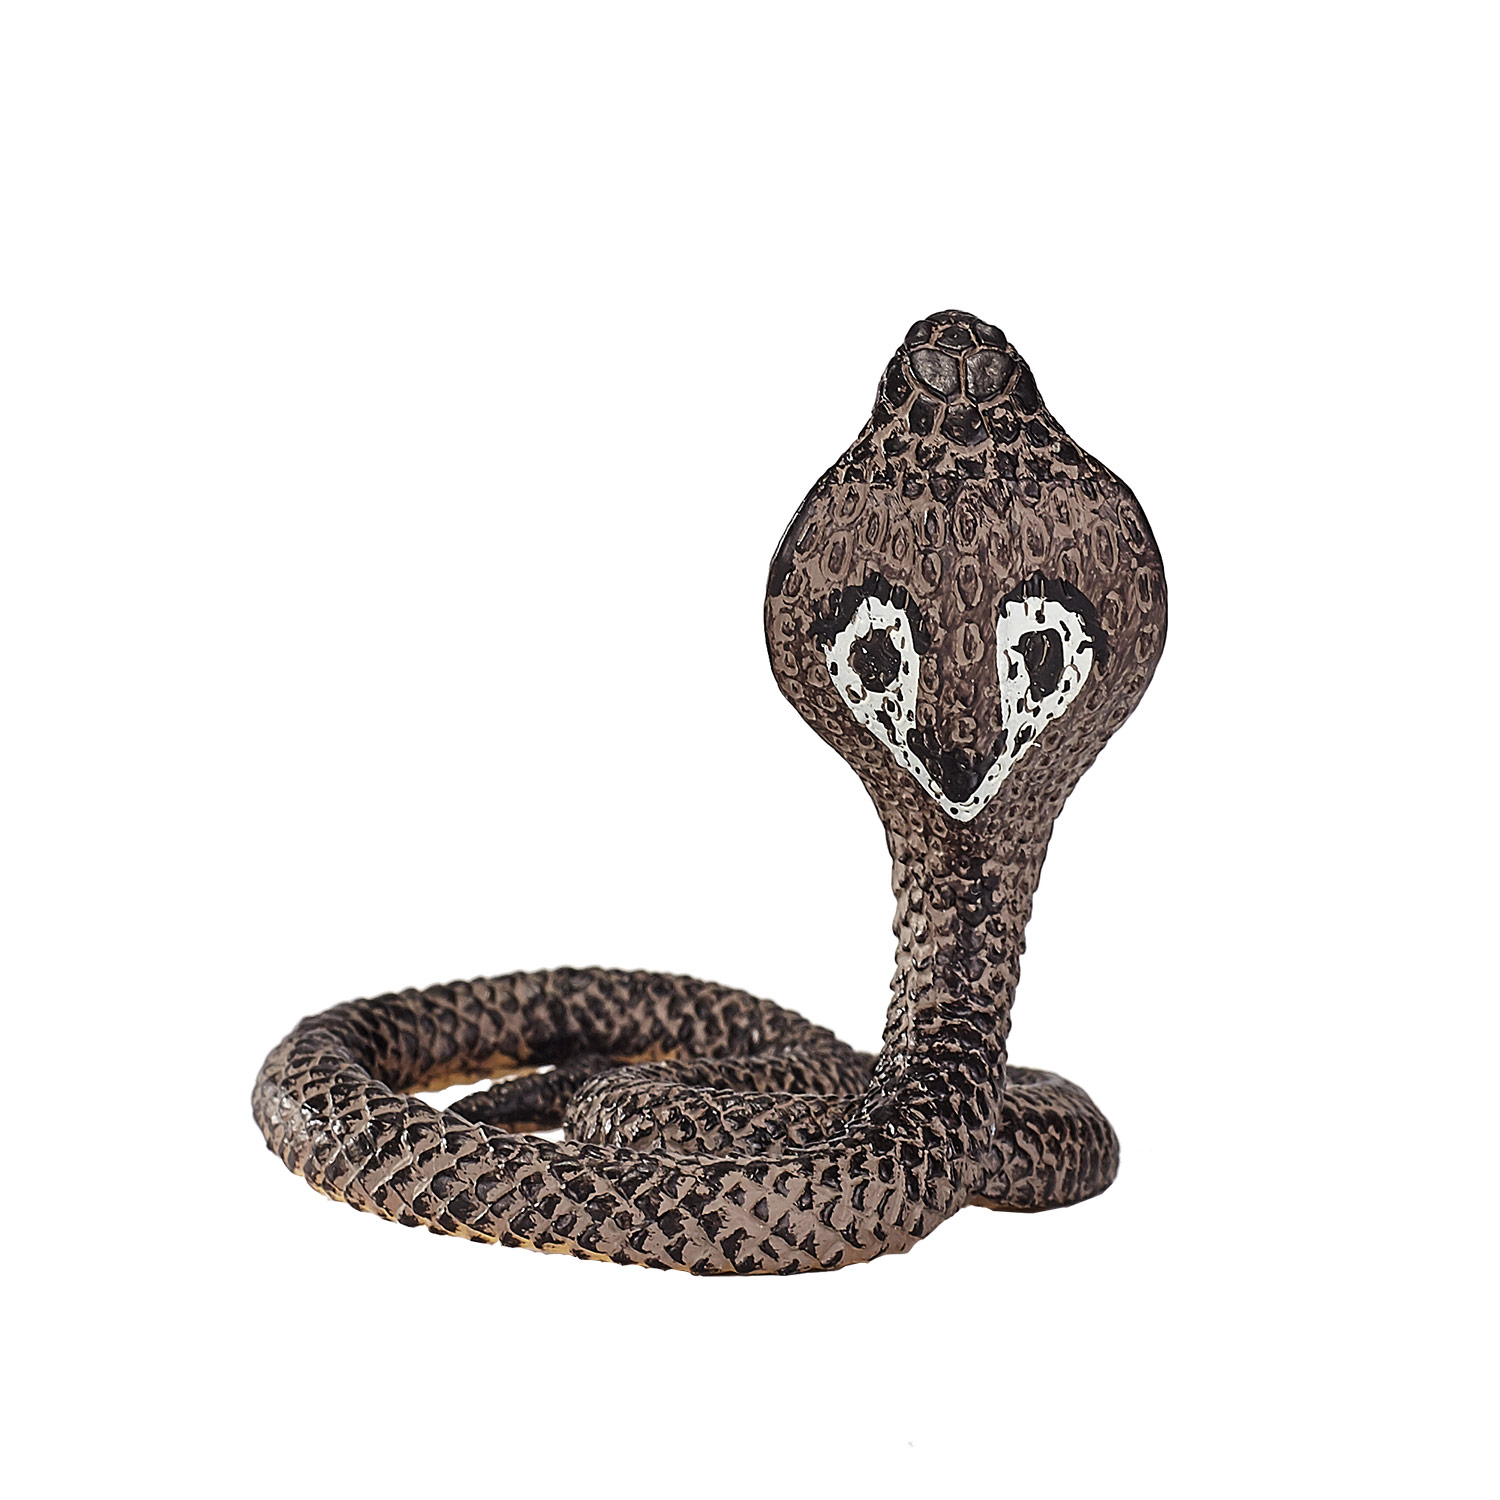 Cobra Toy, Wildlife Animal Toys